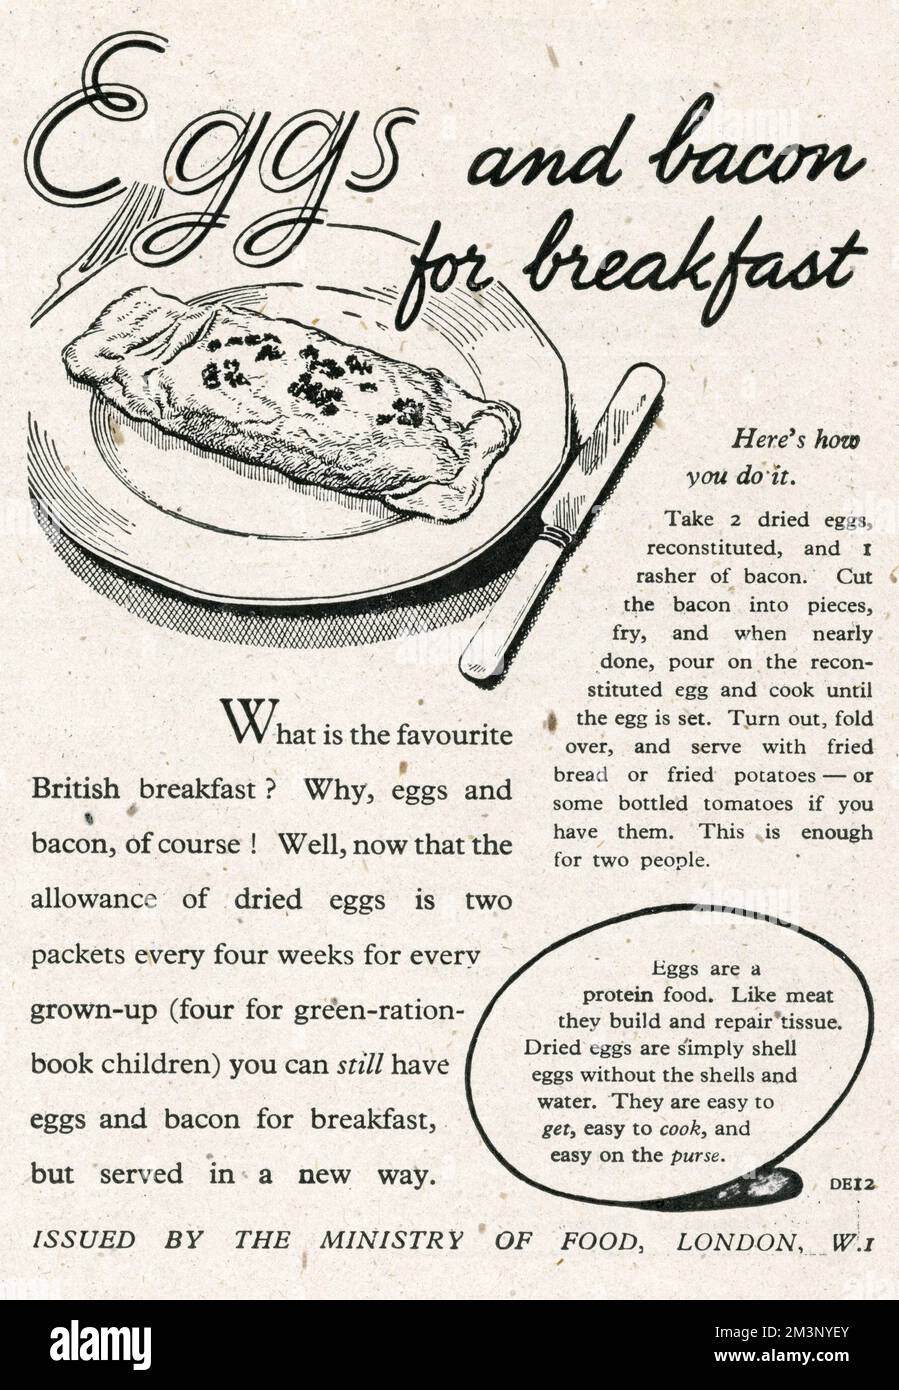 „Eier und Speck zum Frühstück“. Was ist das beliebteste britische Frühstück? Eier und Speck natürlich! Nun, da das Taschengeld für getrocknete Eier zwei Päckchen alle vier Wochen für jeden Erwachsenen beträgt (vier für Kinder mit grüner Ration), kann man noch Eier und Speck zum Frühstück haben, aber auf eine neue Art serviert werden. 1945 Stockfoto